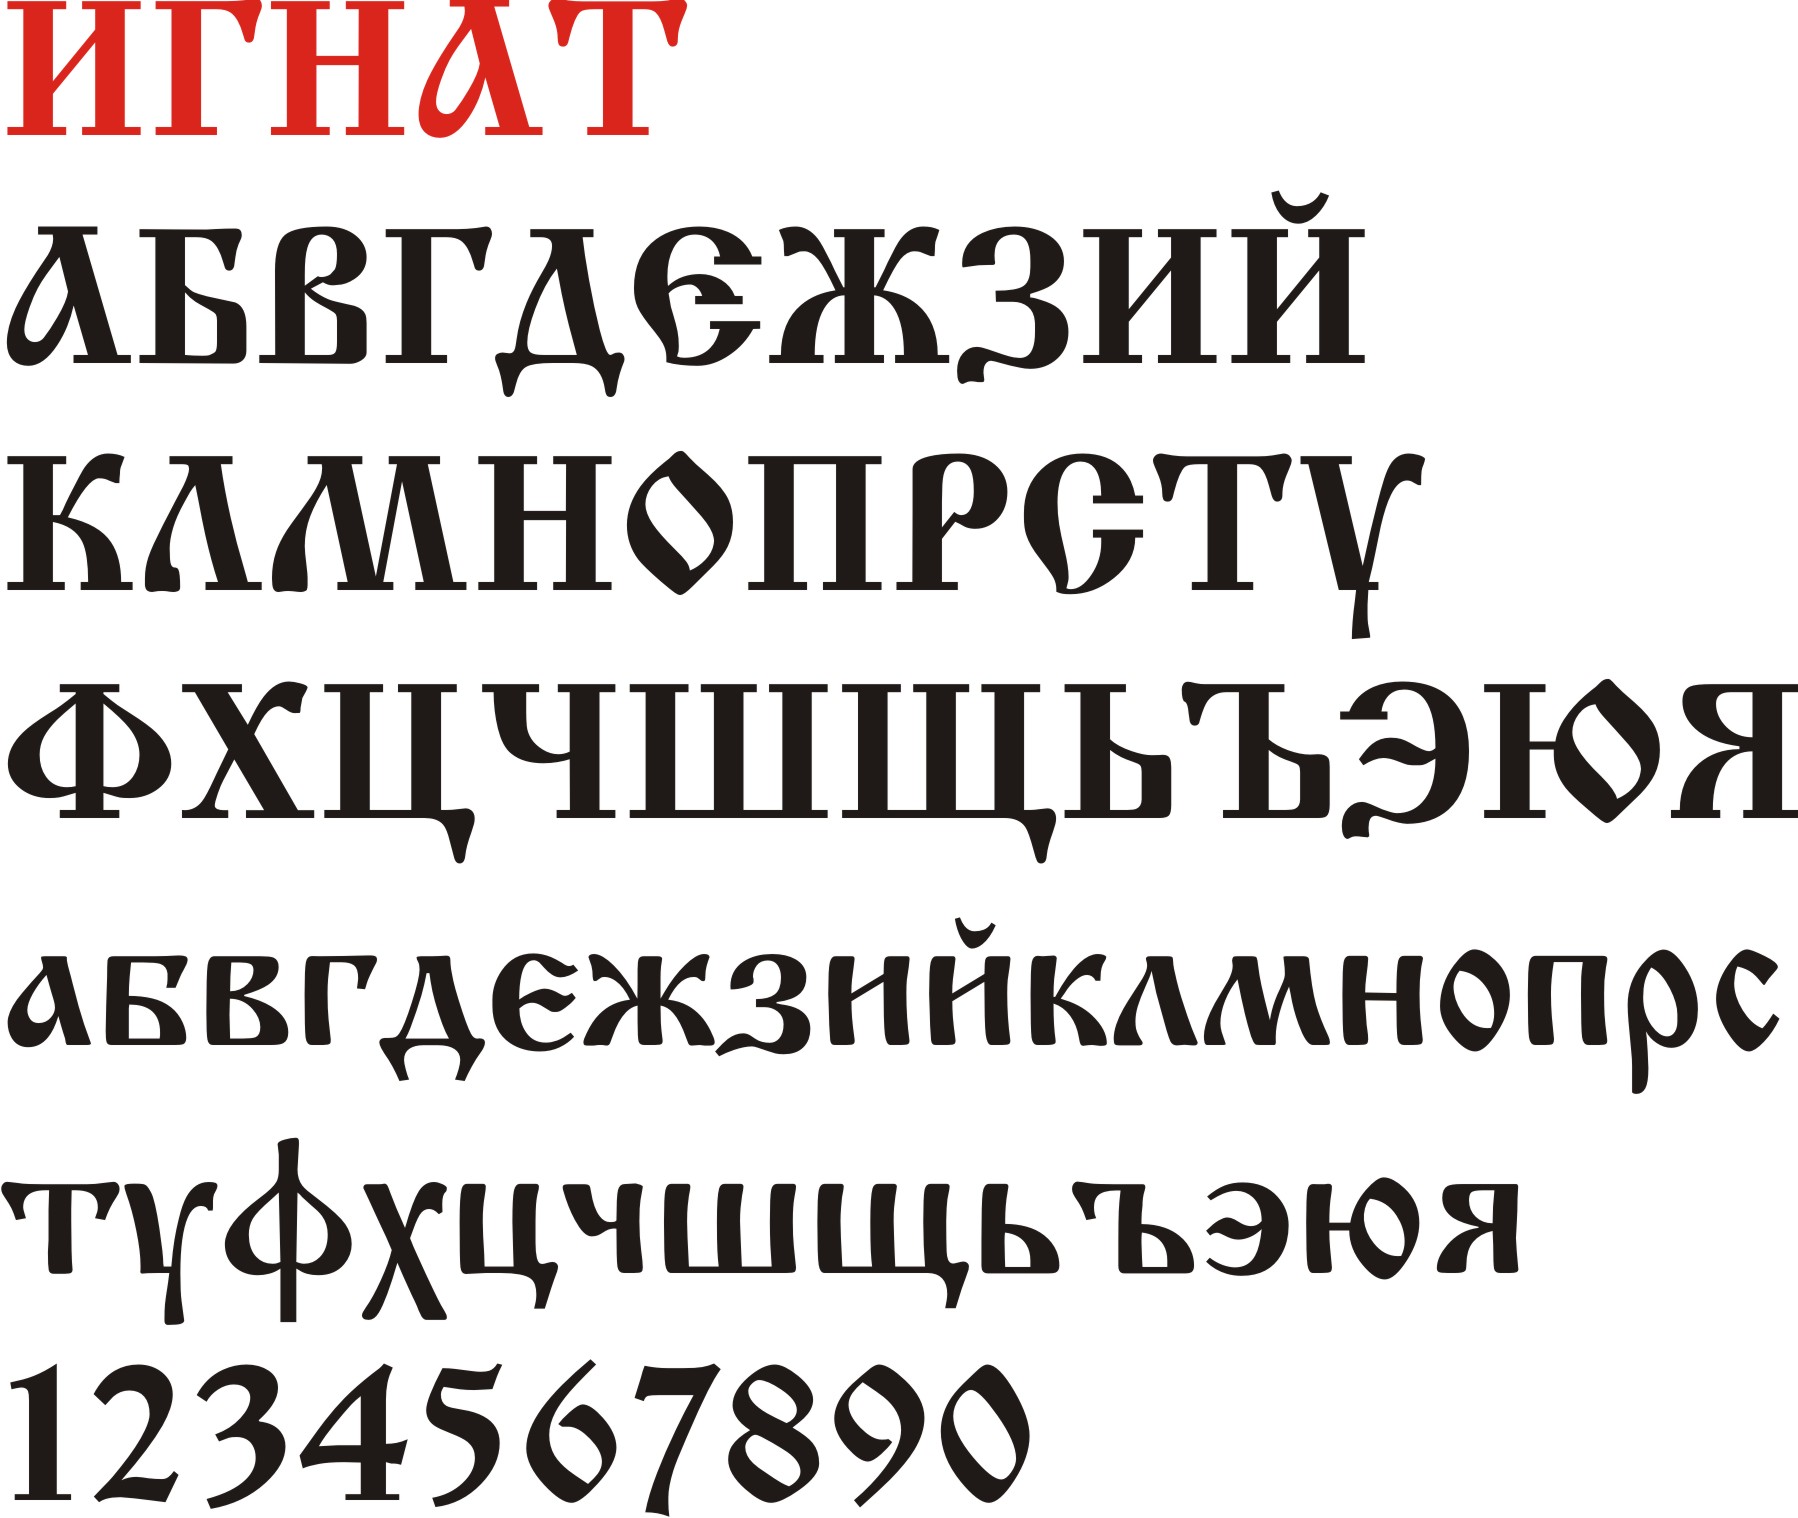 шрифты для стима на русском фото 34